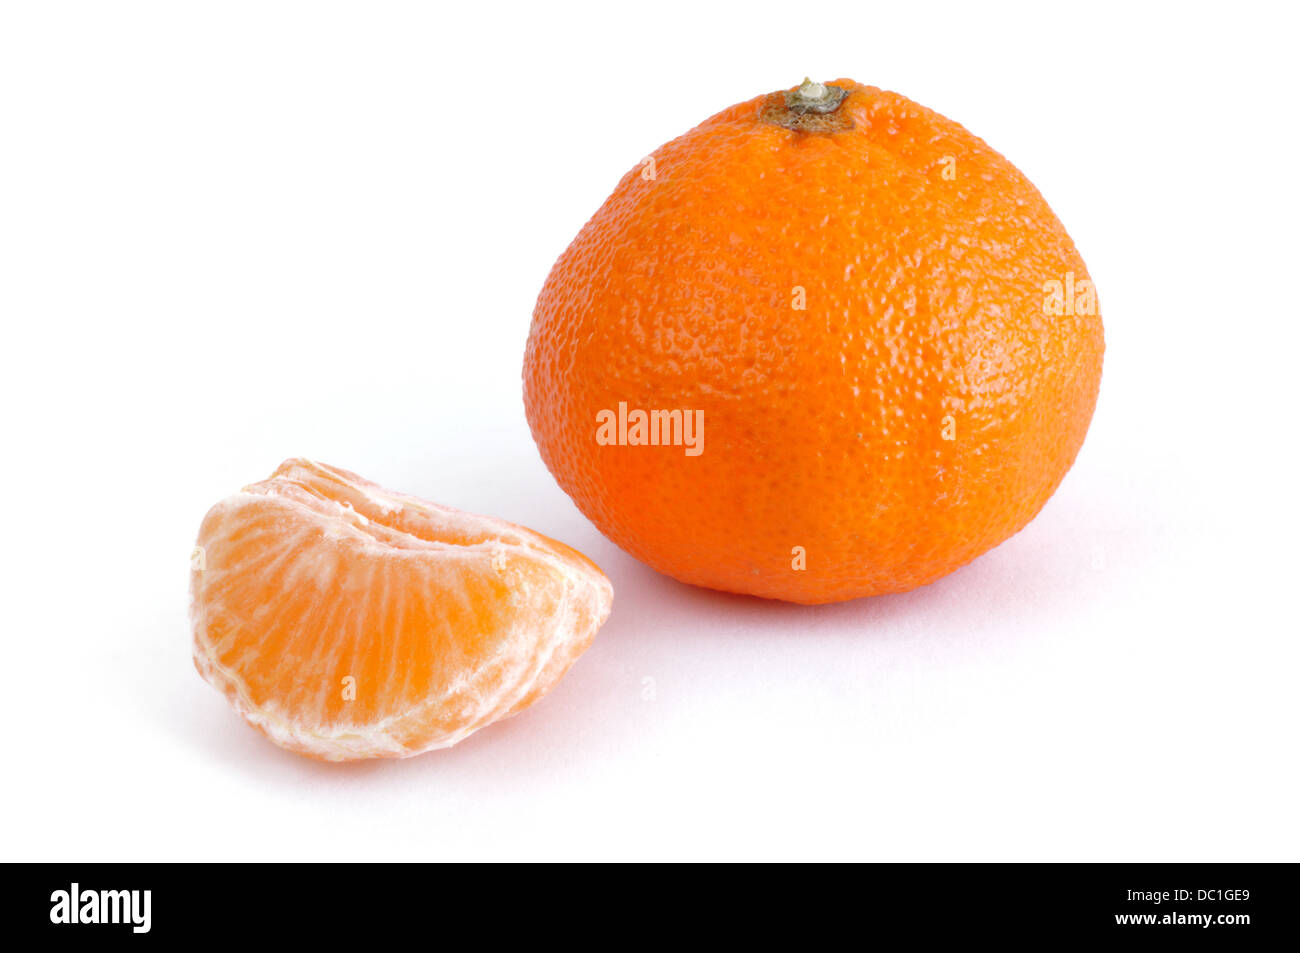 La mandarine / clémentine sur fond blanc Banque D'Images